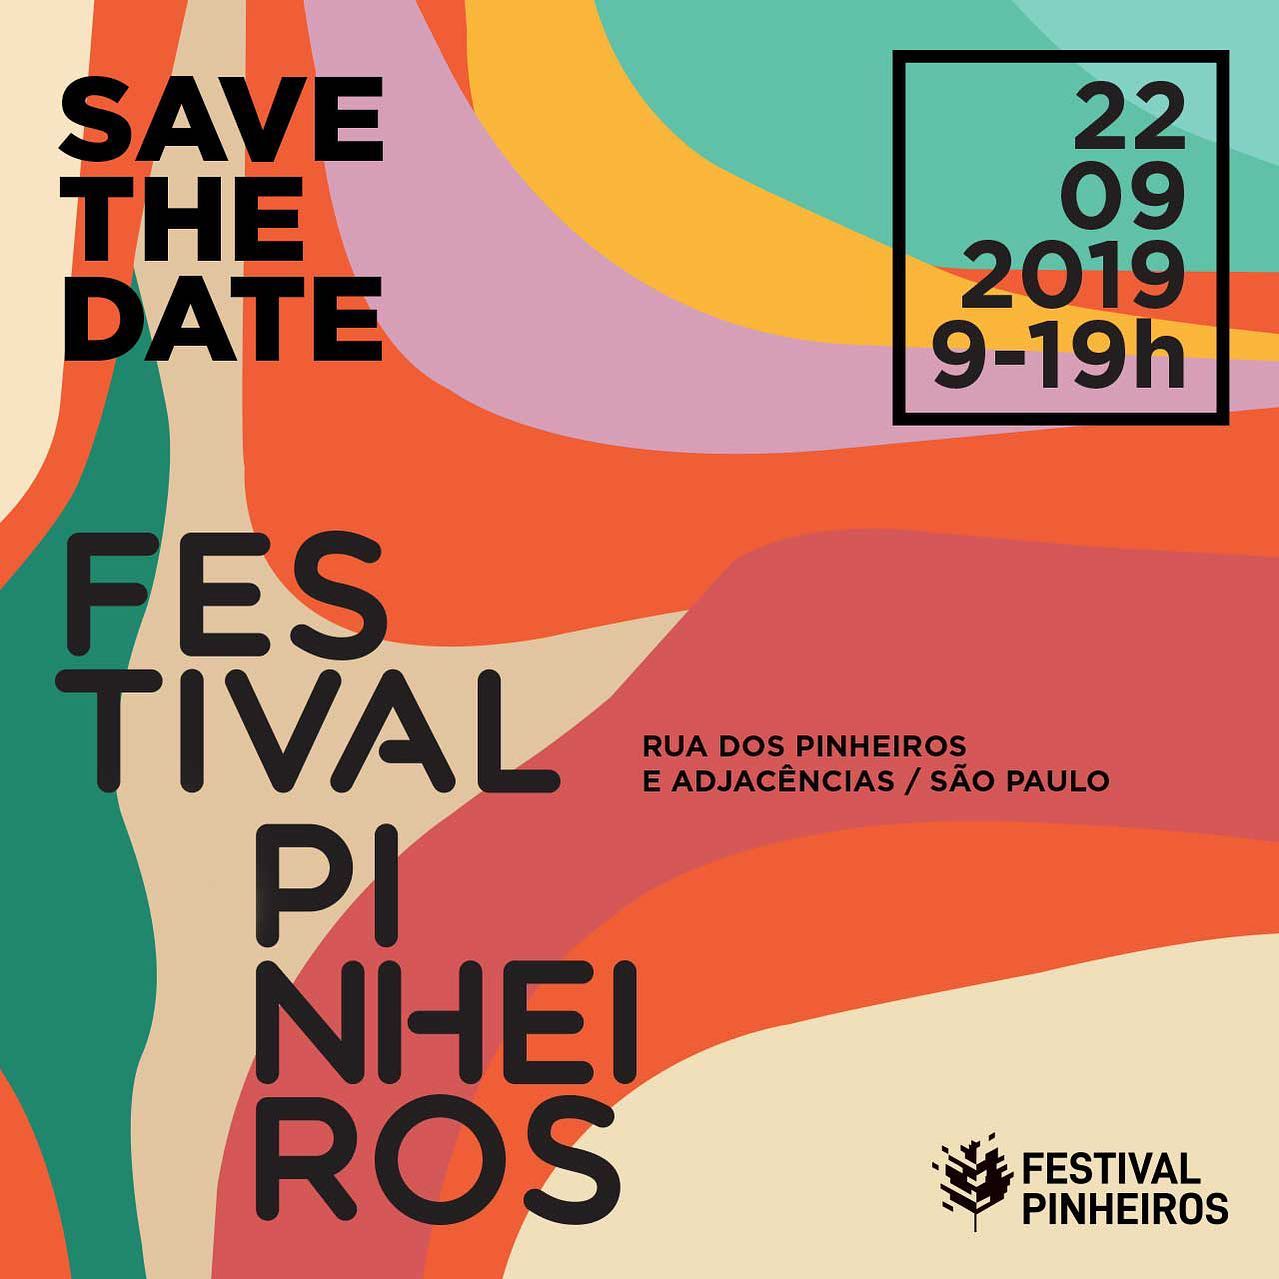 Festival de Pinheiros